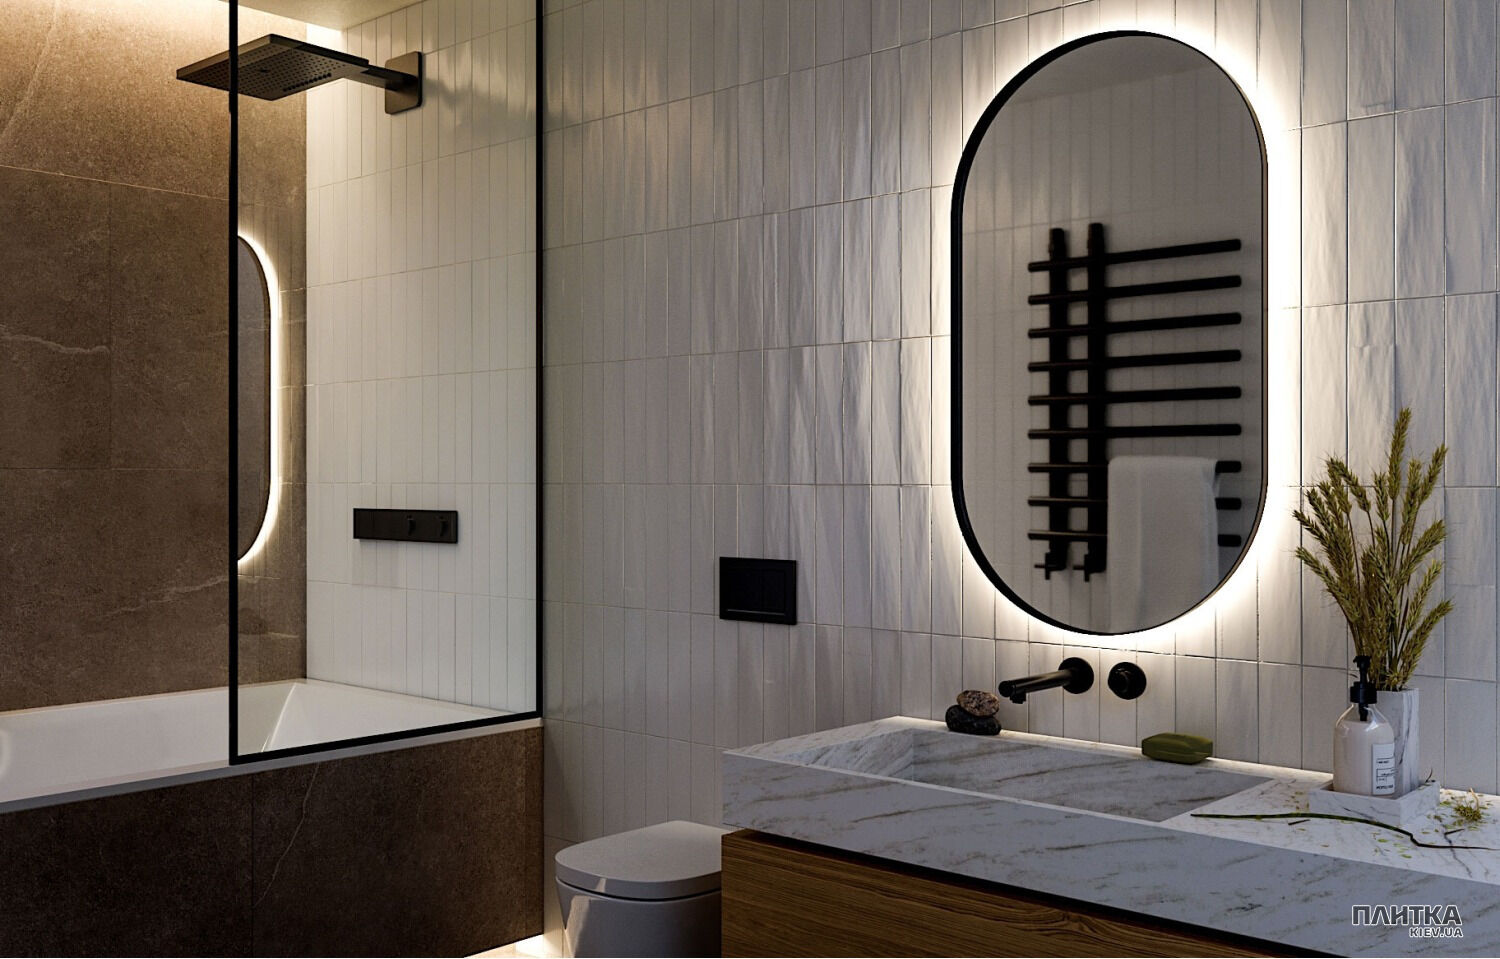 Зеркало Liberta DIANO Зеркало 700x1200, стекло стандарт 4 мм, с подсветкой на стену, цвет рамы - RAL9005, еврокромка черный,серебристый